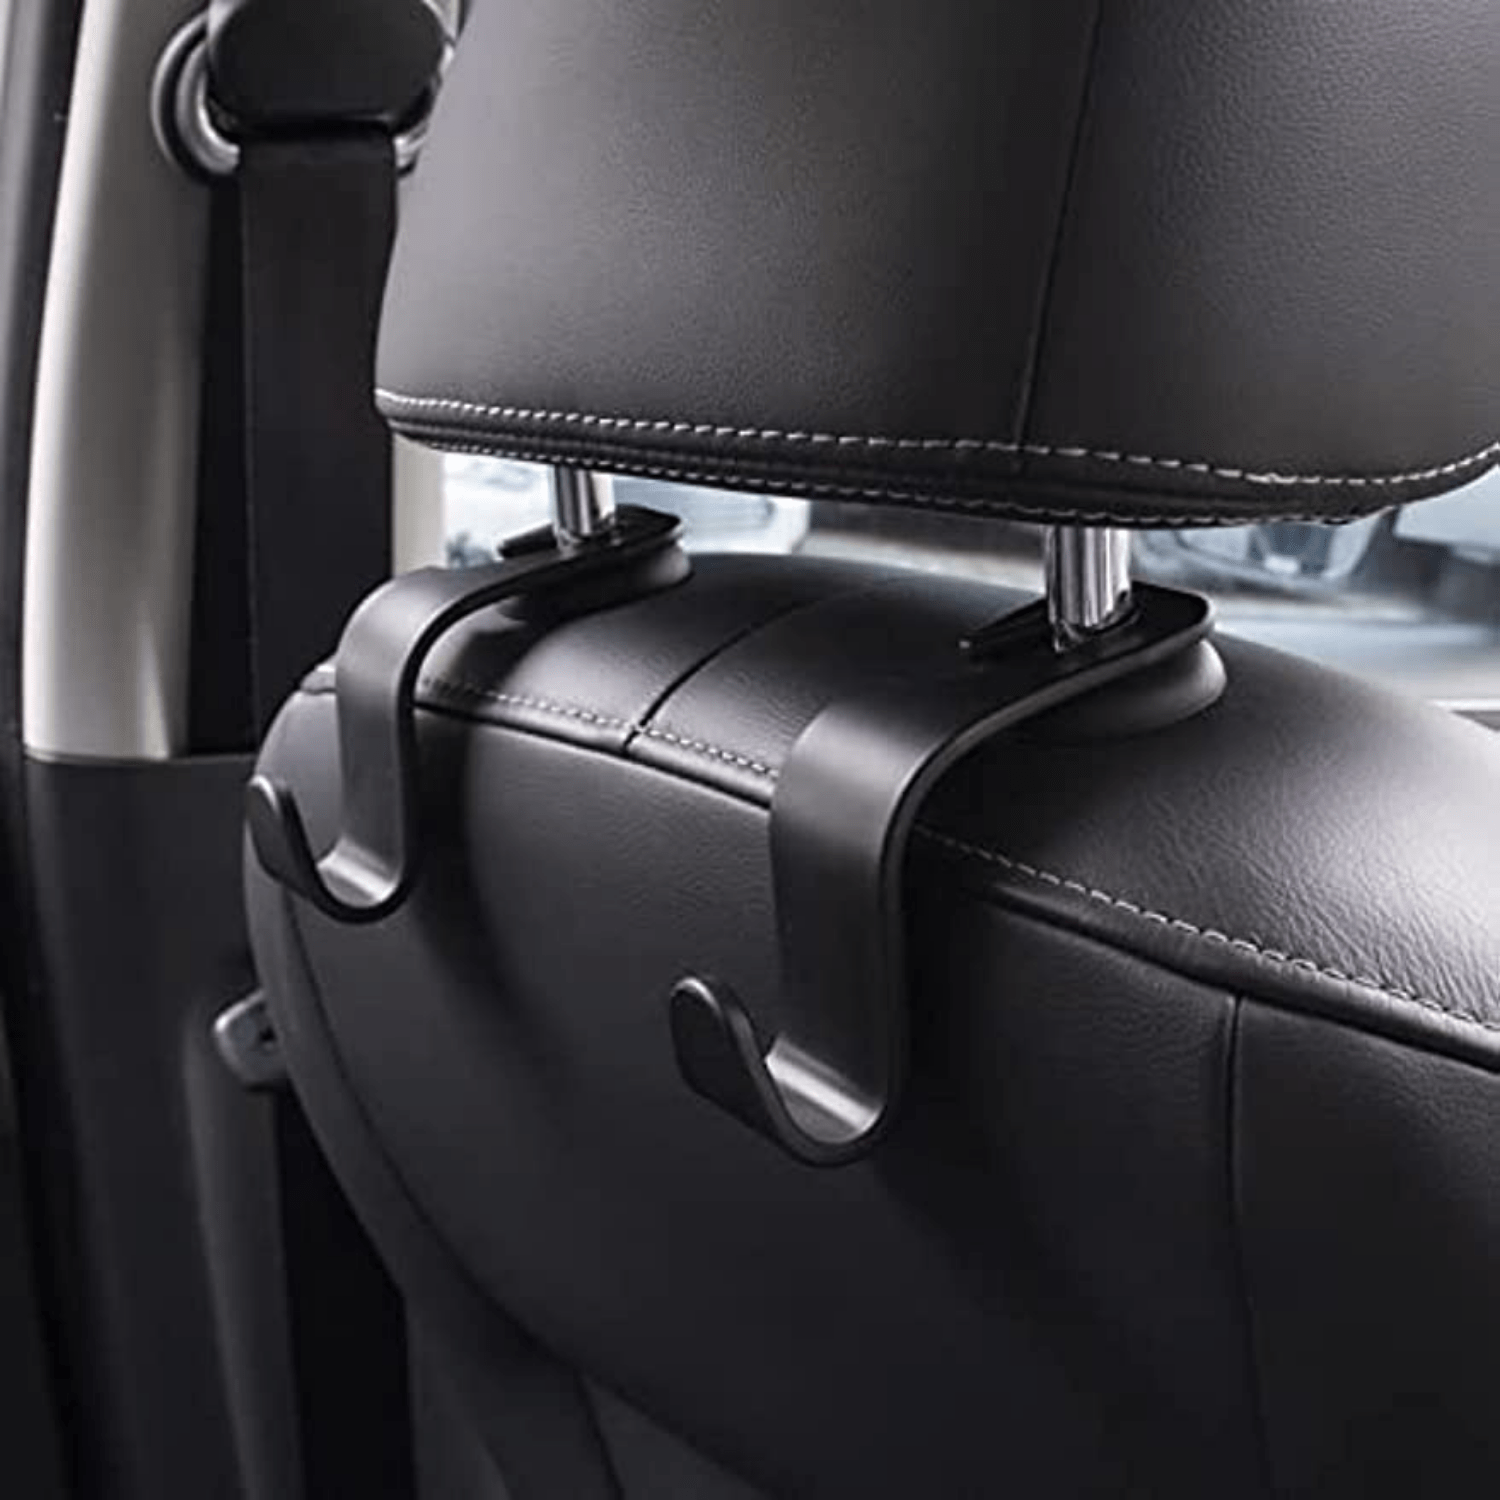 Car Seat Headrest Hook 4 Pack Hanger Storage Organizer Universal